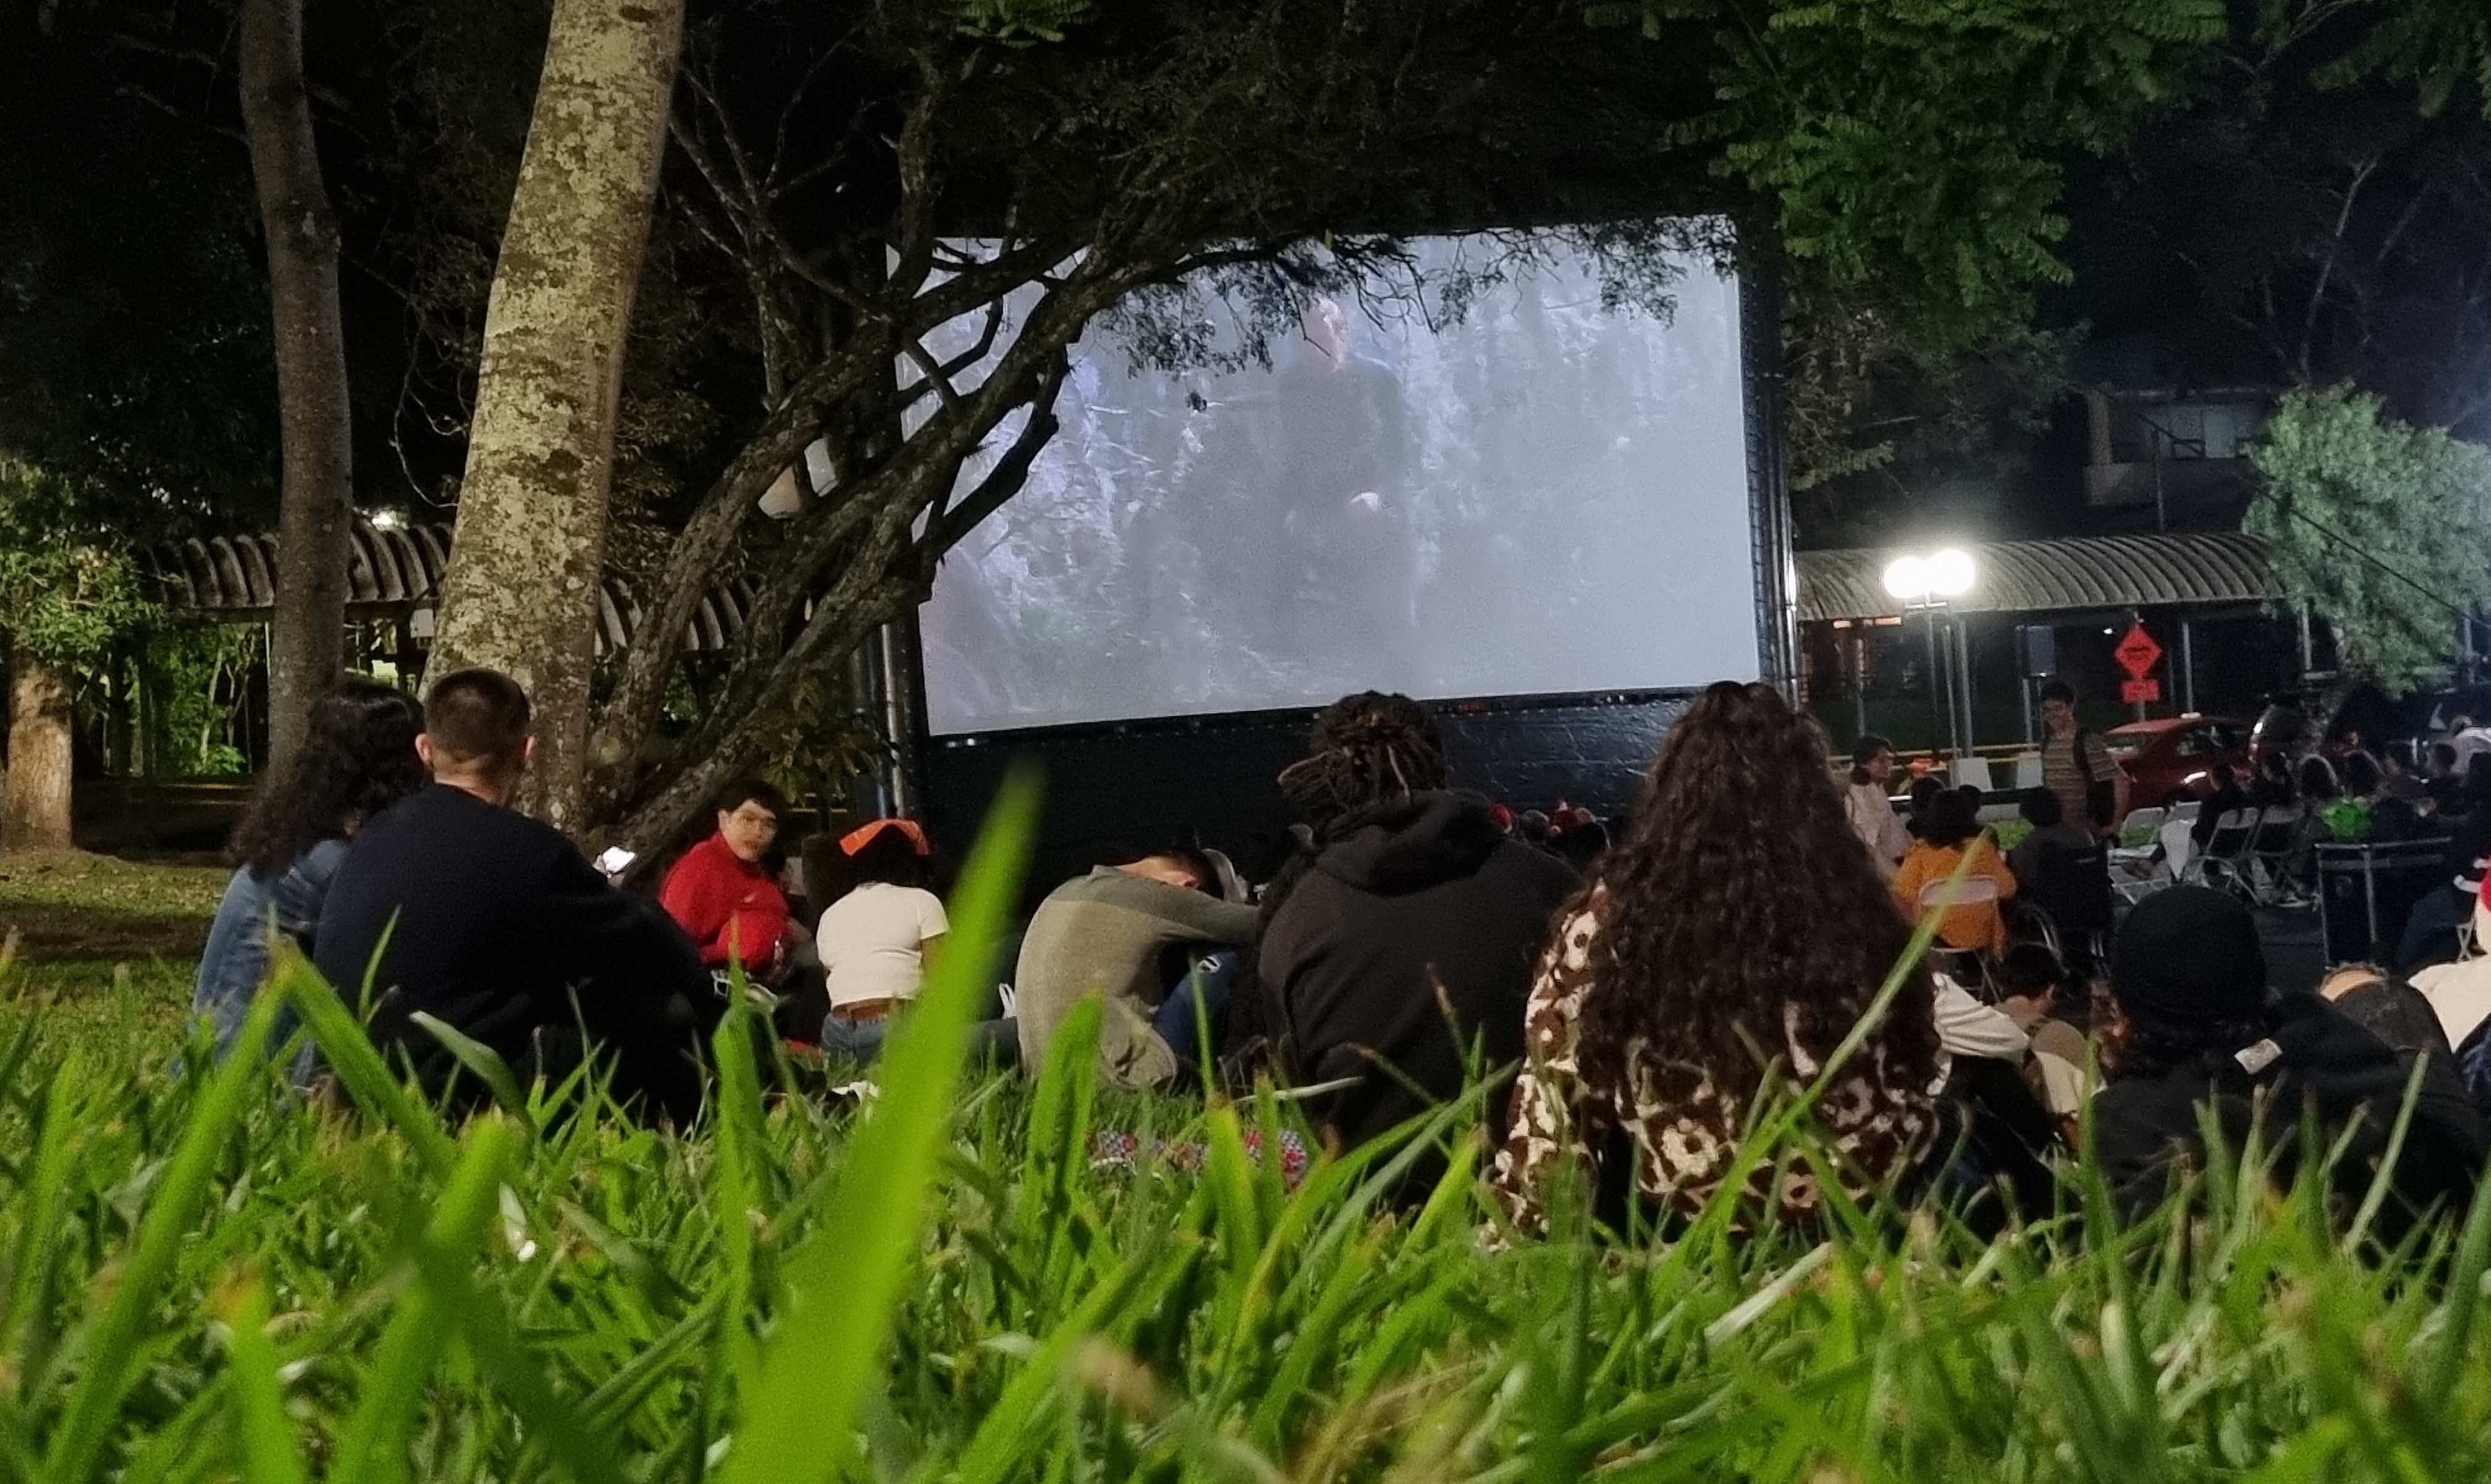 img-noticia-Foto de una de la funciones del cine al aire libre, donde se aprecia a las personas sentadas en el pasto y asientos viendo la película proyectada en una pantalla inflable. 